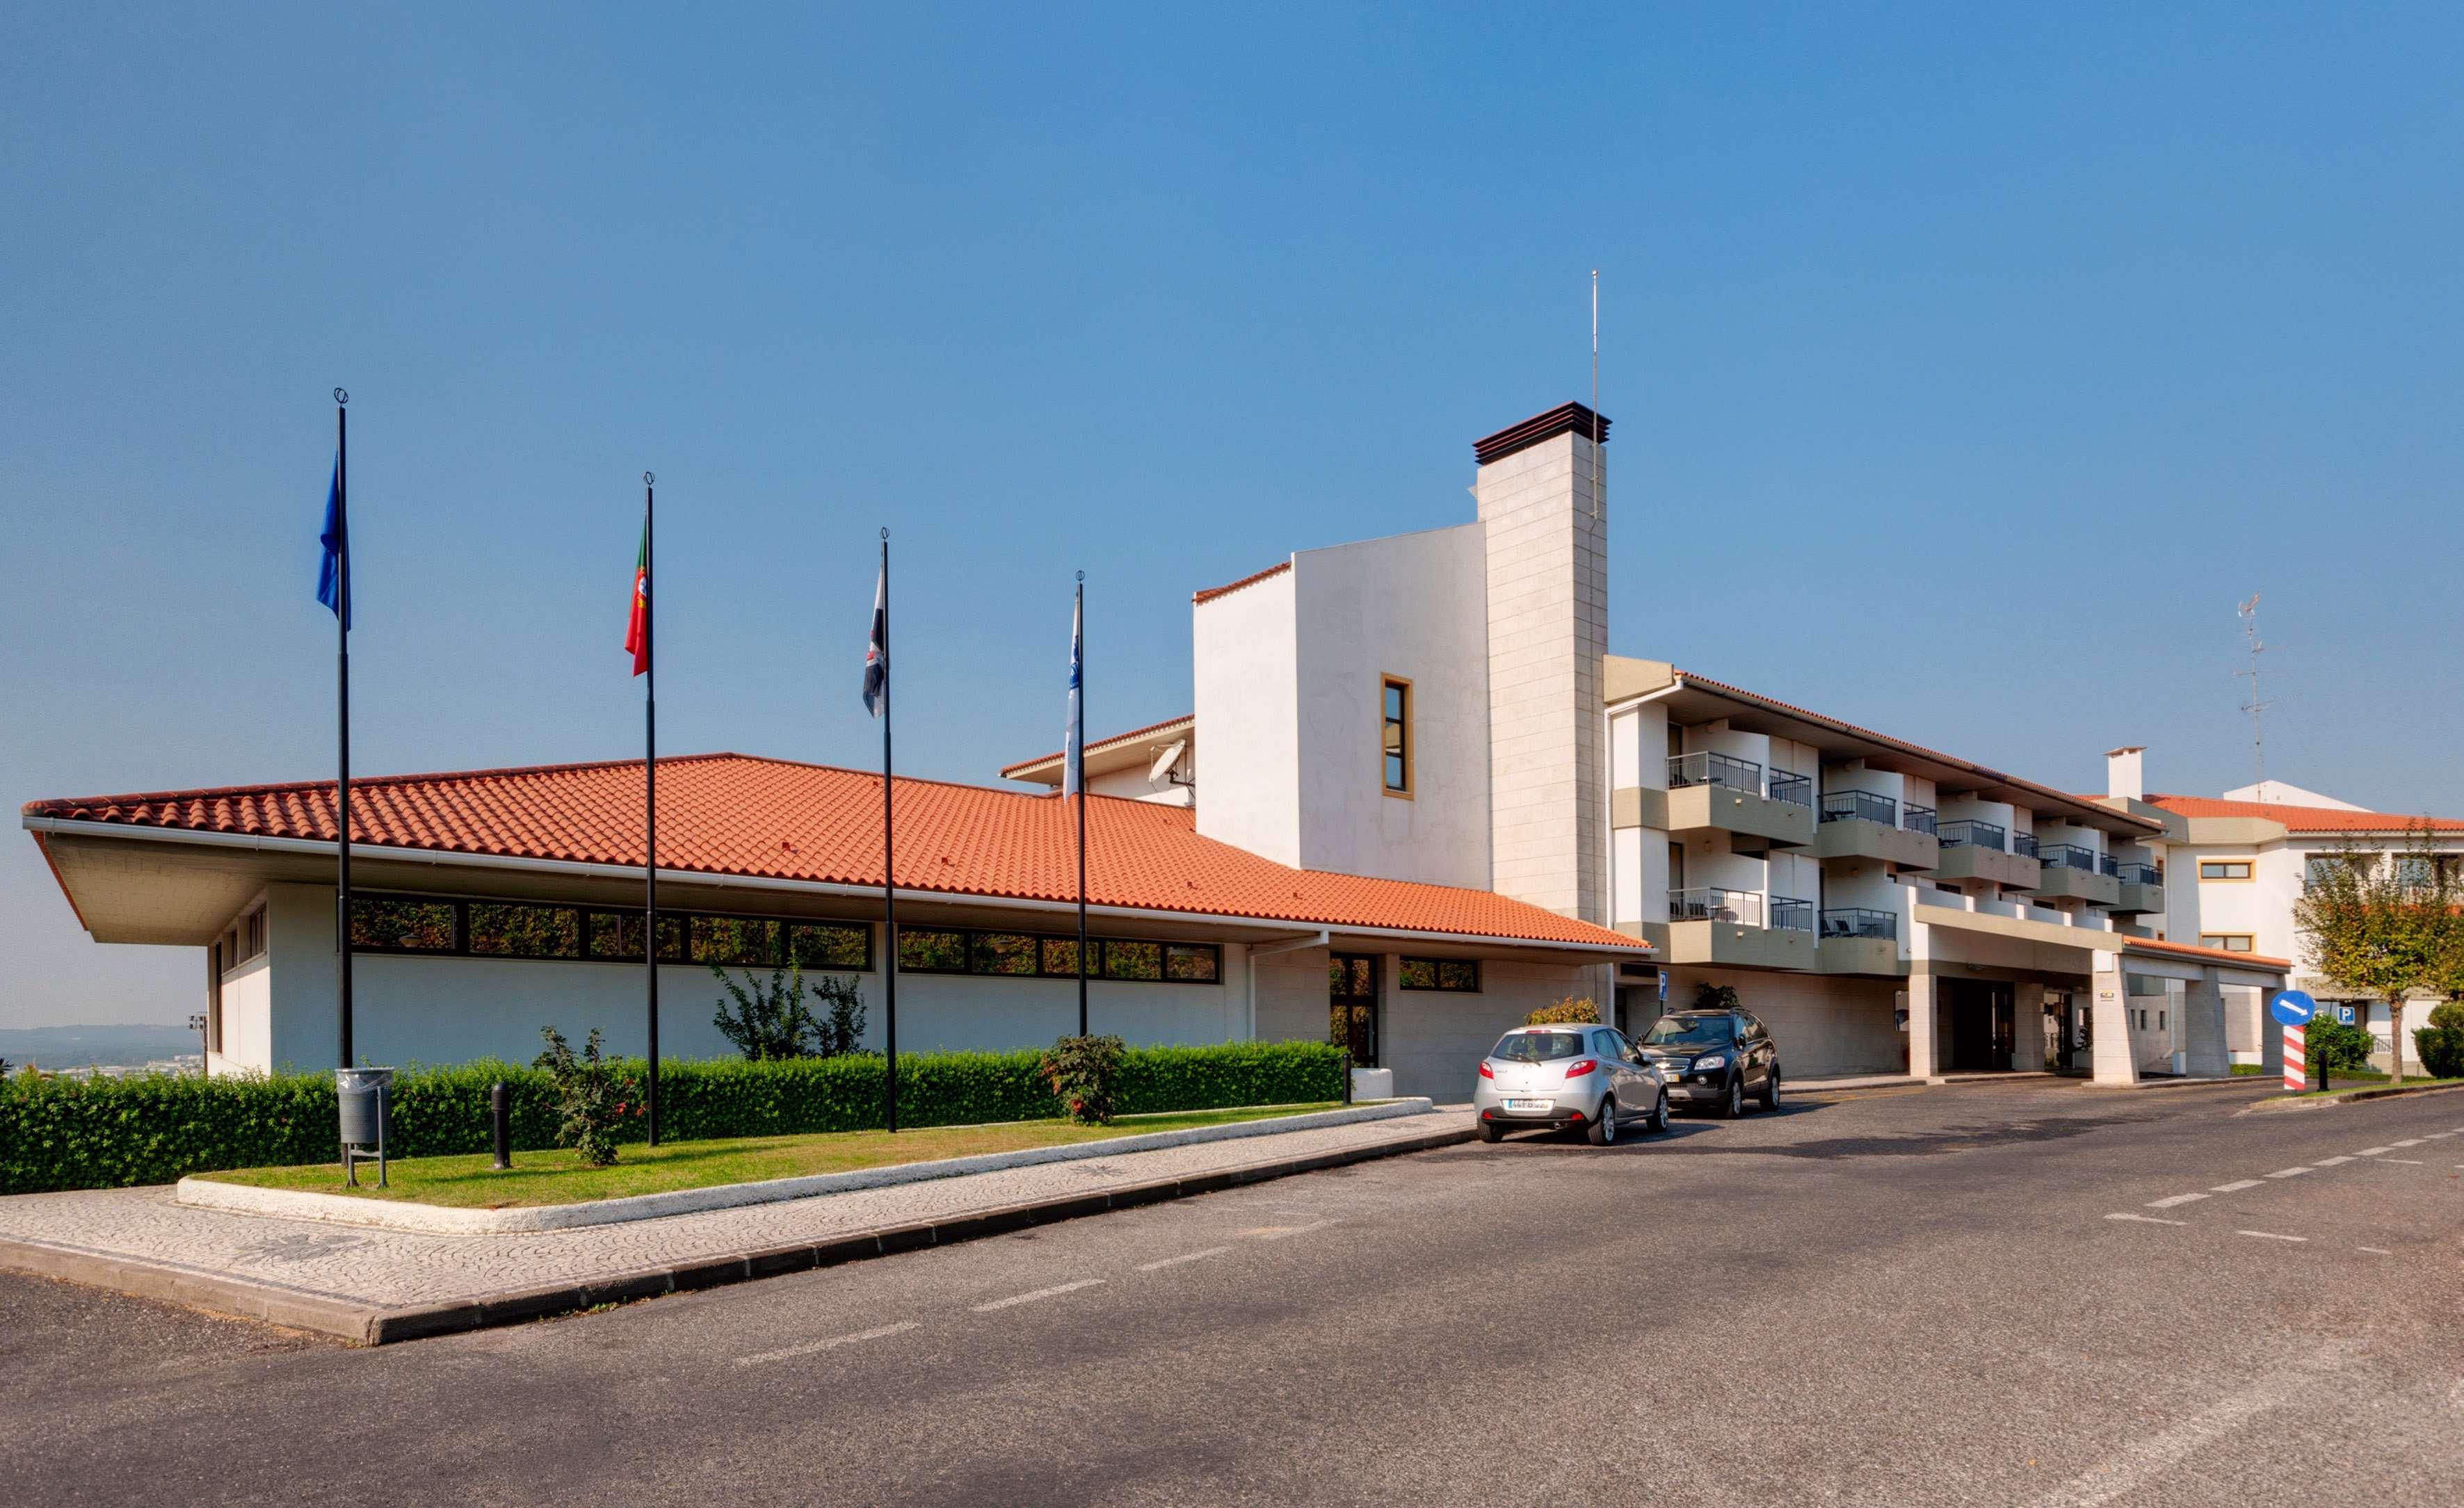 מלון קאסטלו בראנקו Melia Castelo Branco מראה חיצוני תמונה